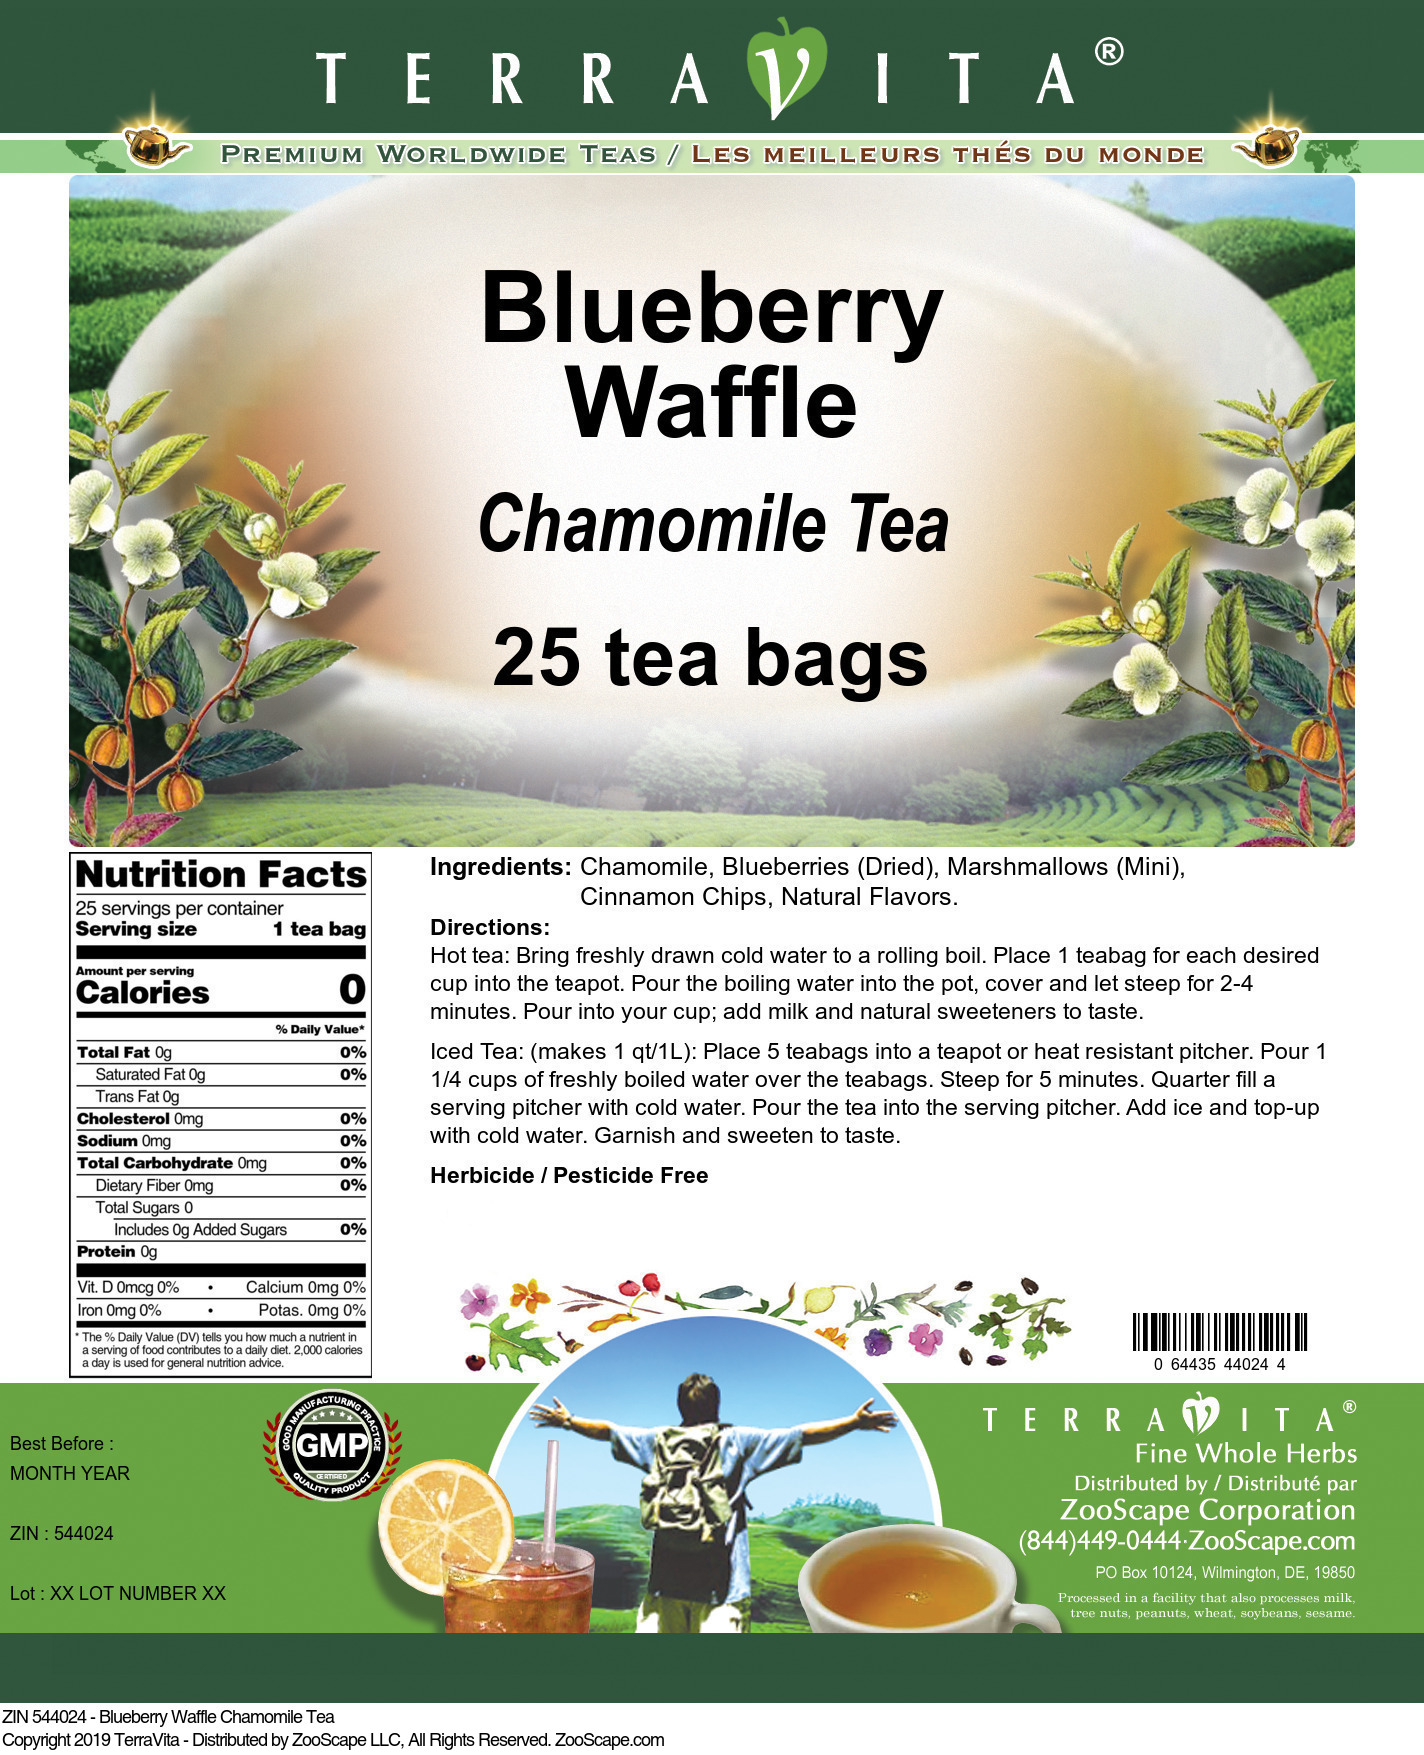 Blueberry Waffle Chamomile Tea - Label